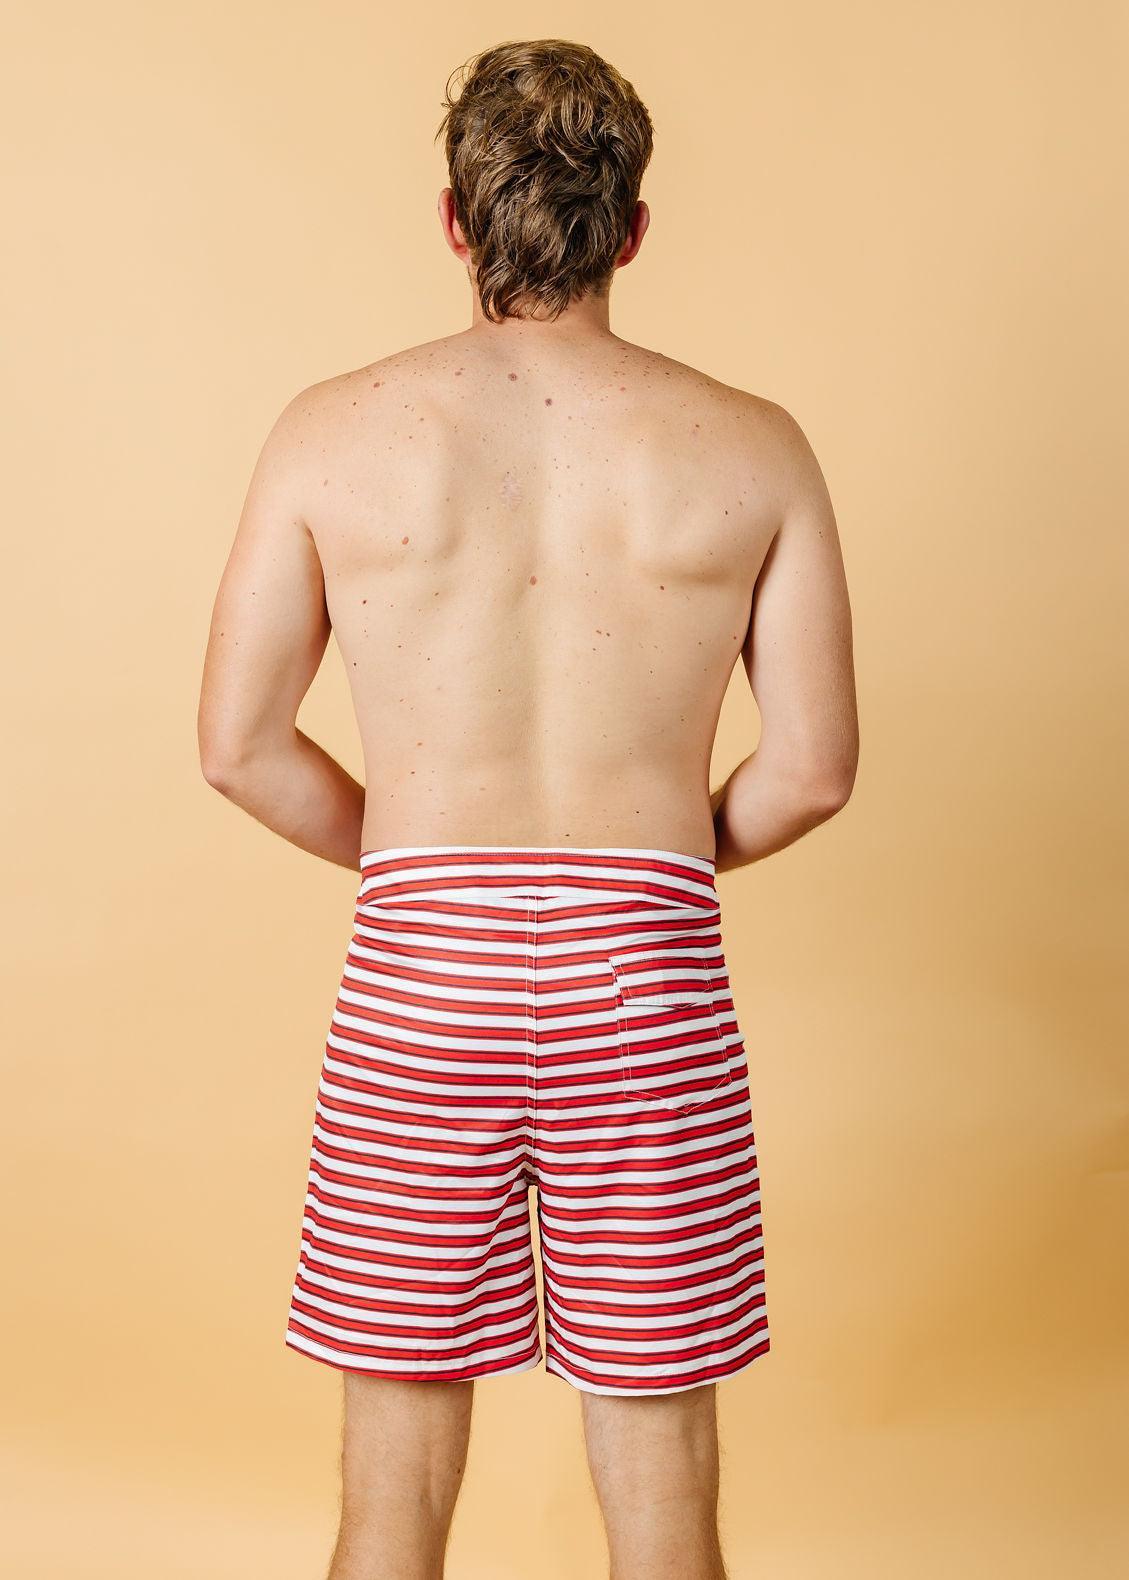 Mens Swimsuit - Trunks - Red + Navy Stripe